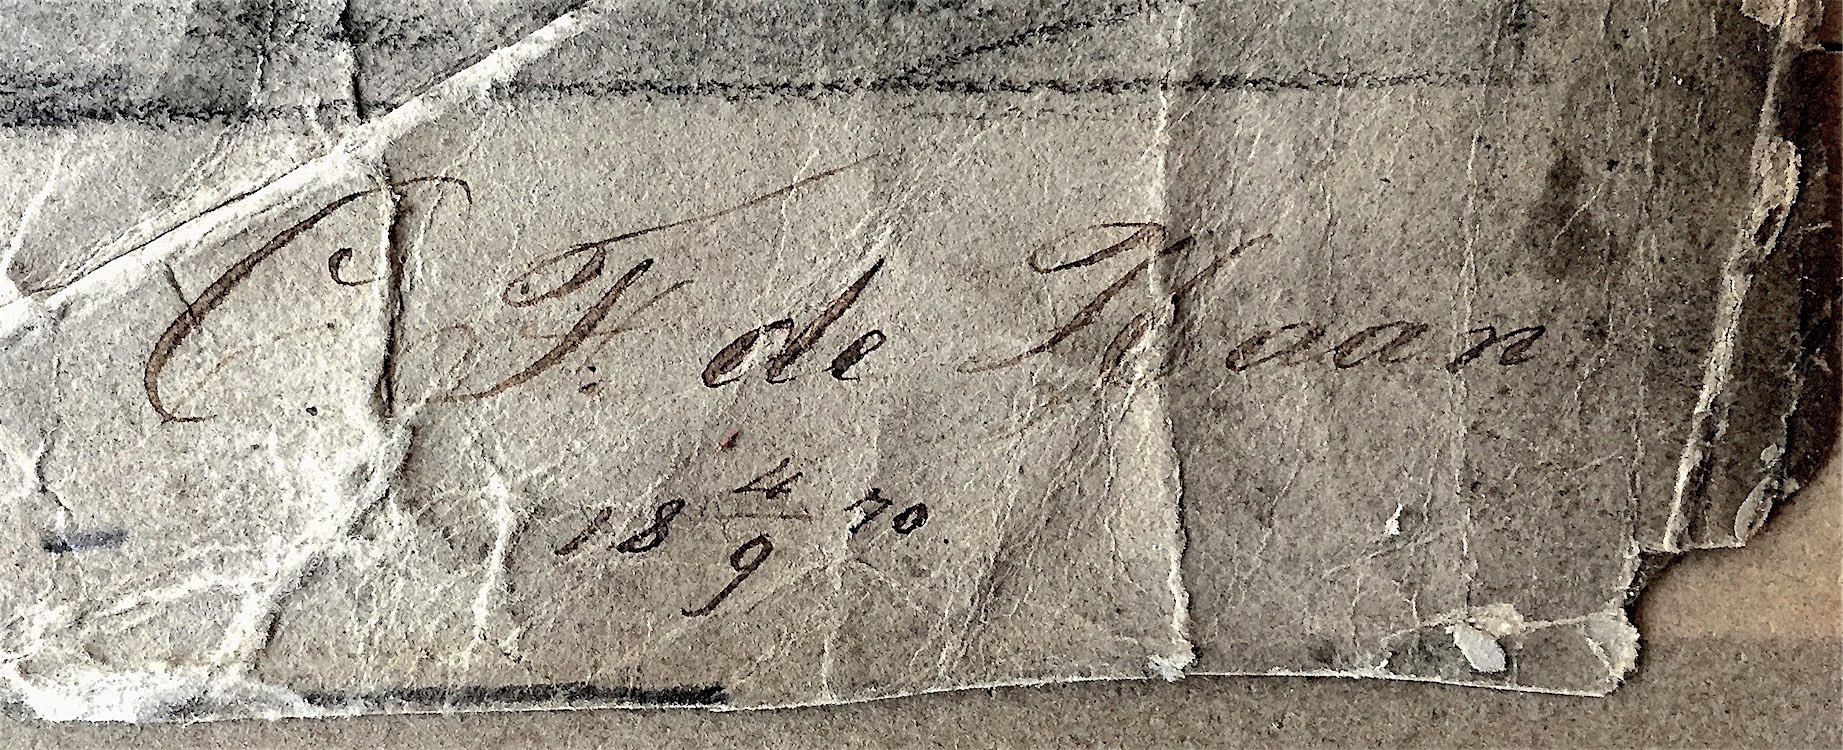 De sierlijke handtekening van Caspar Franciscus (Cas V) de Haan onder een houtskooltekening. Privé-archief T. S. M. de Haan, Delft.